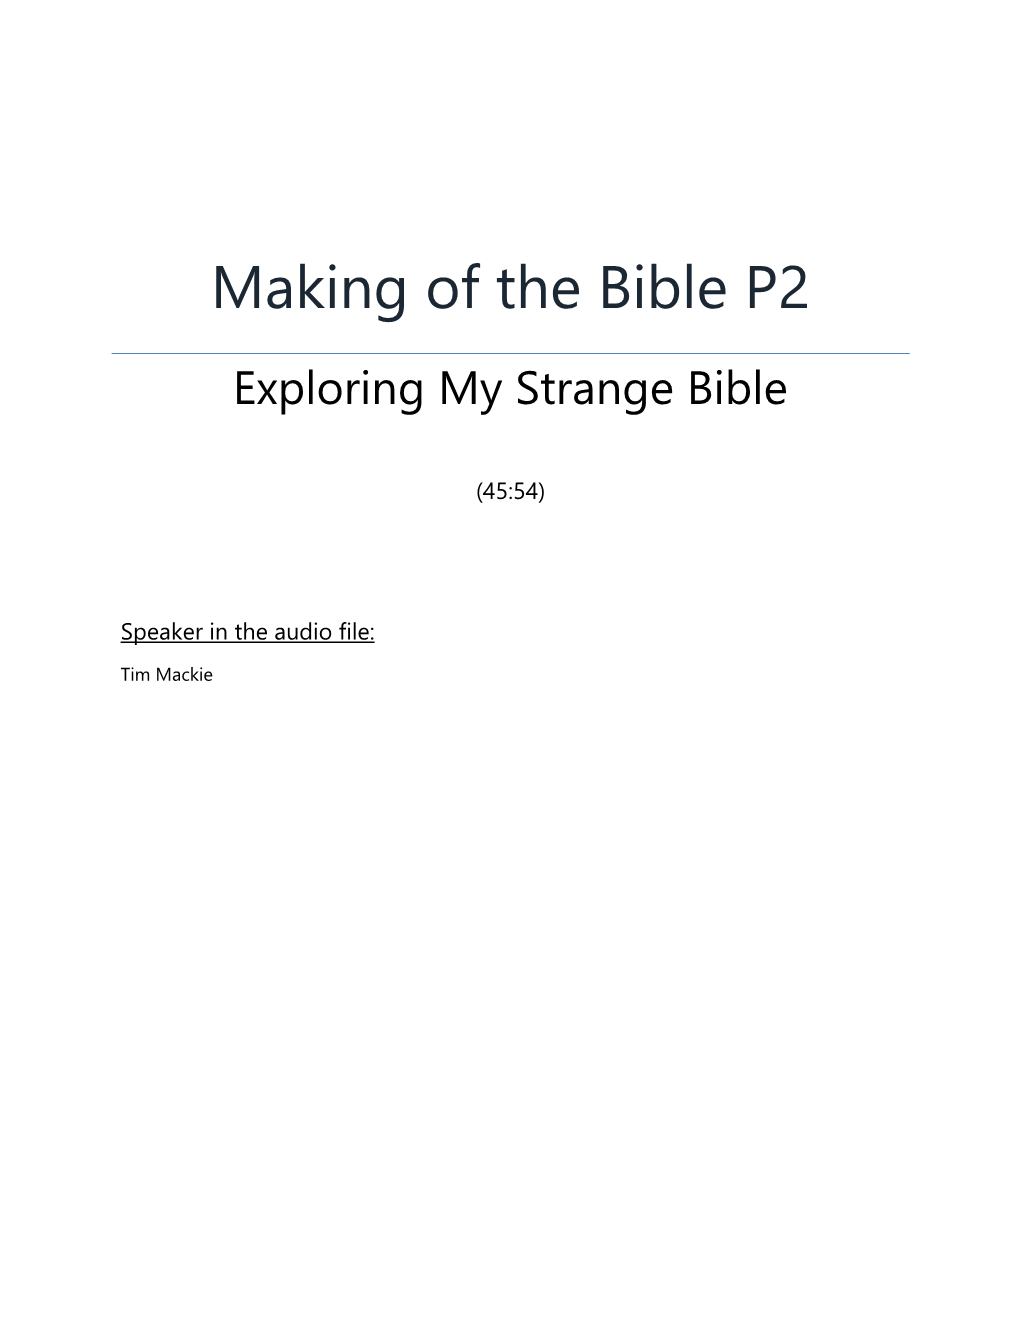 Making of the Bible P2 Exploring My Strange Bible